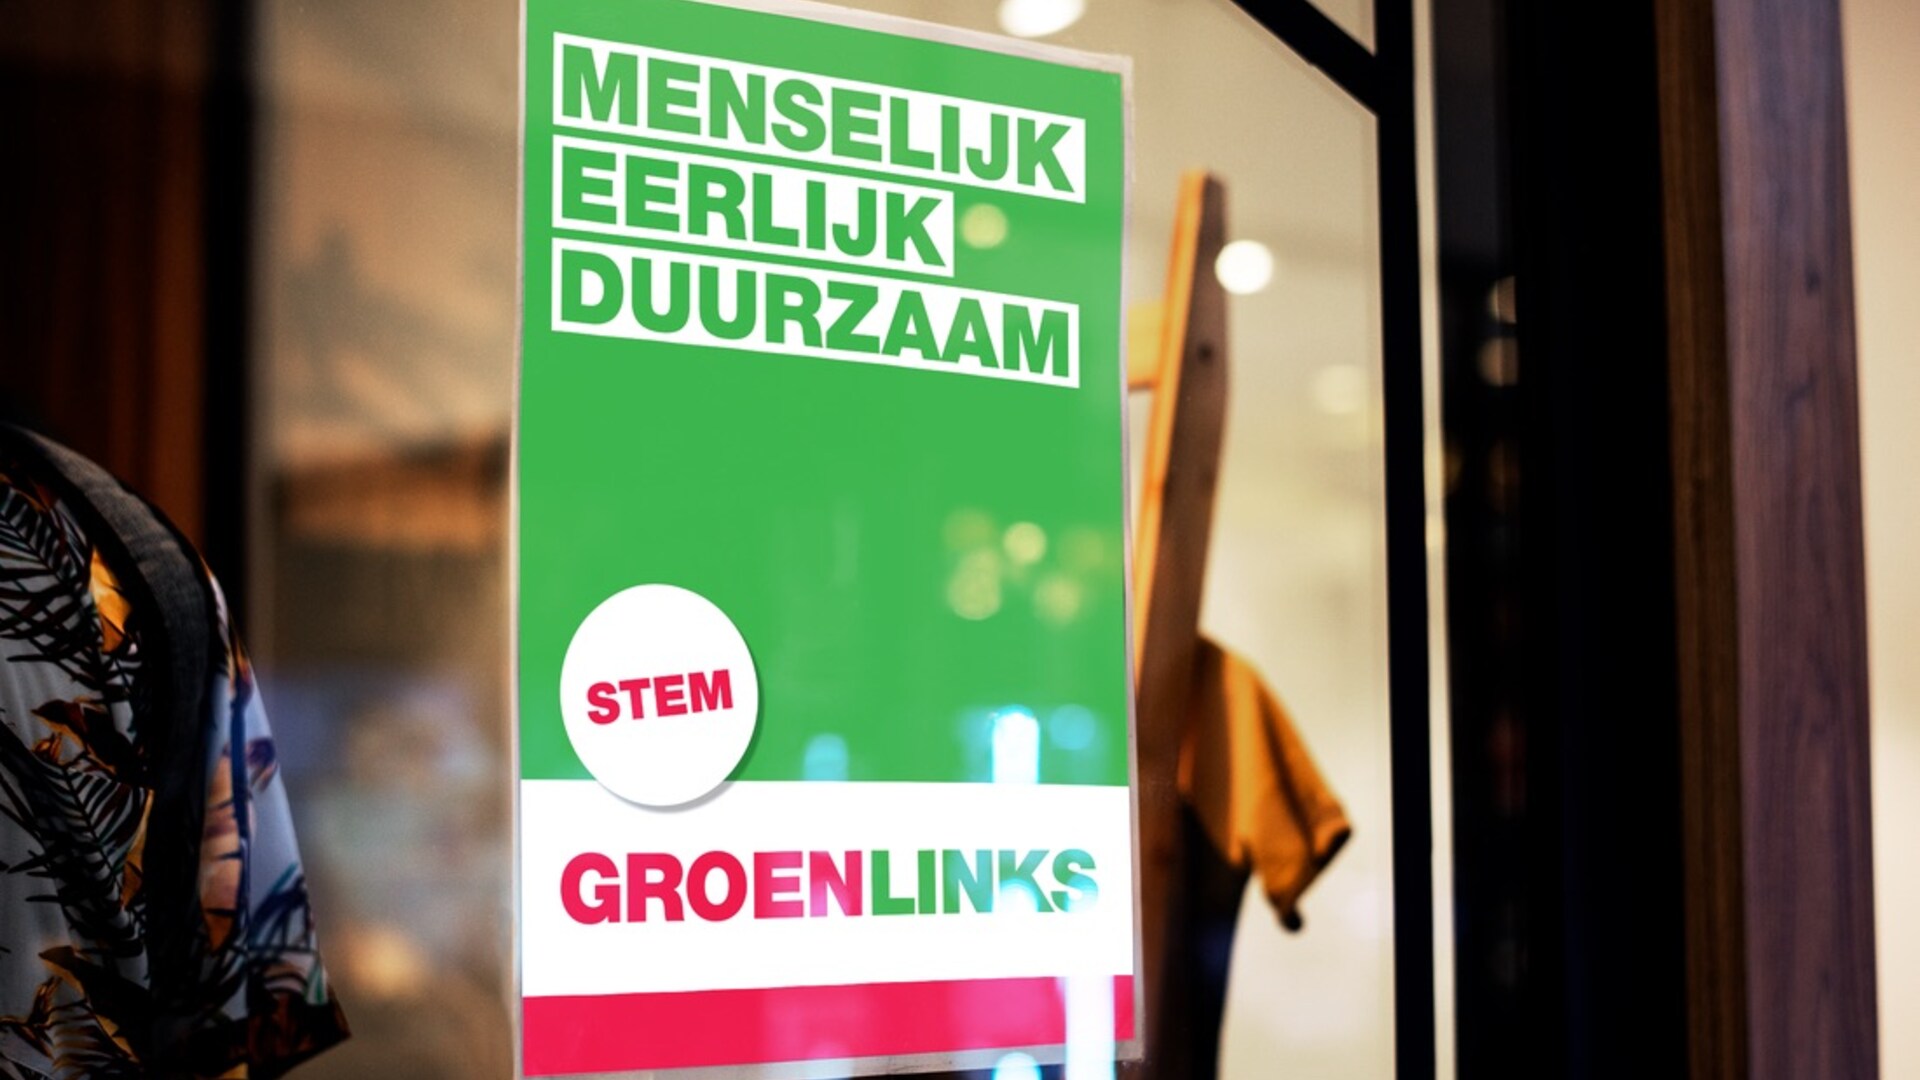 Raamposter van GroenLinks voor de gemeenteraadsverkiezing van 2022